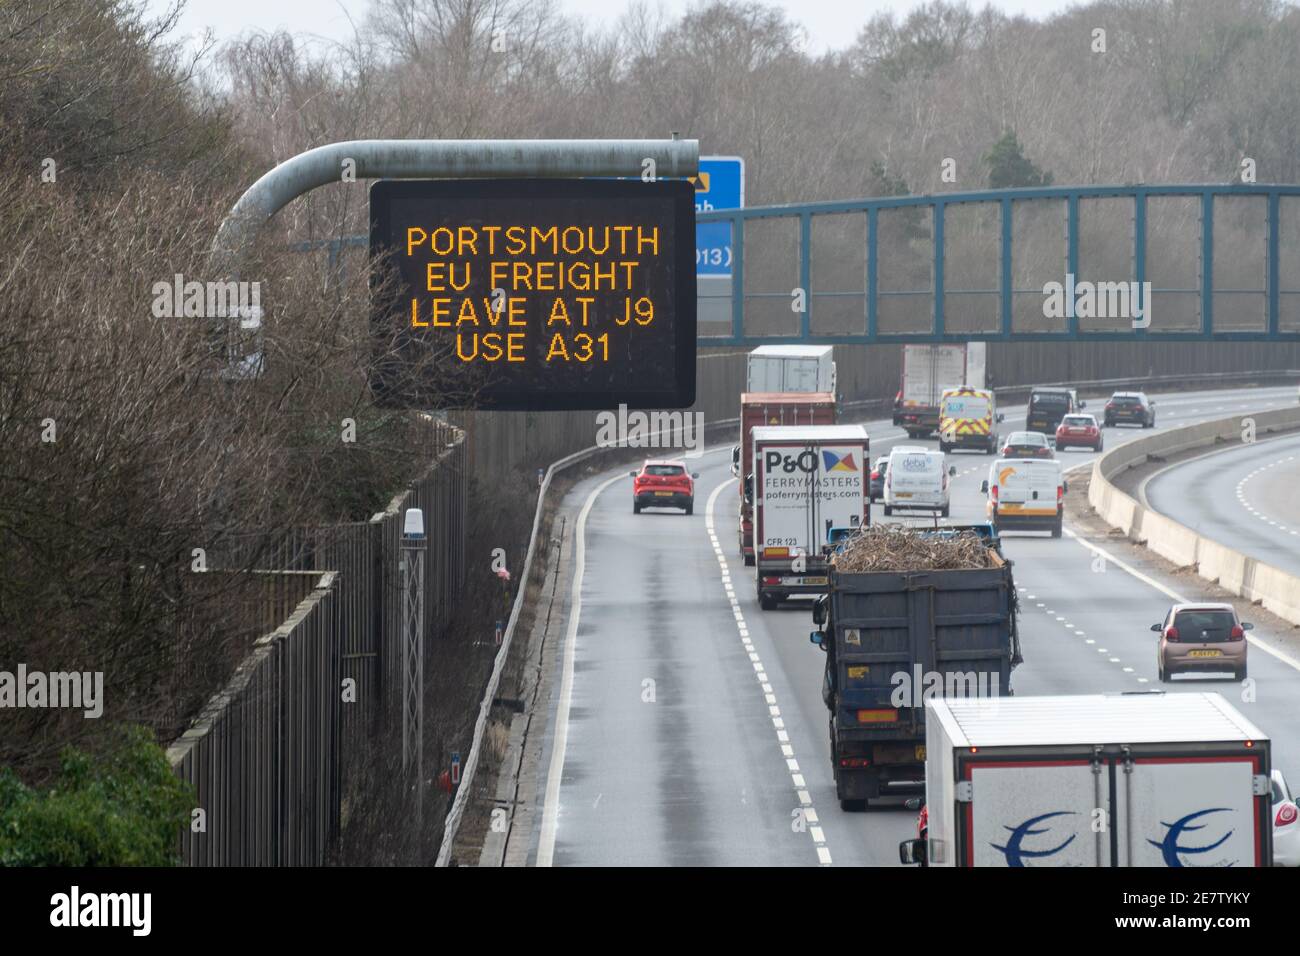 M3 Autobahnschild, Portsmouth EU Frachten verlassen bei J9 A31, Richtungen für LKW Richtung Europa nach dem Brexit, Januar 2021 England Großbritannien Stockfoto